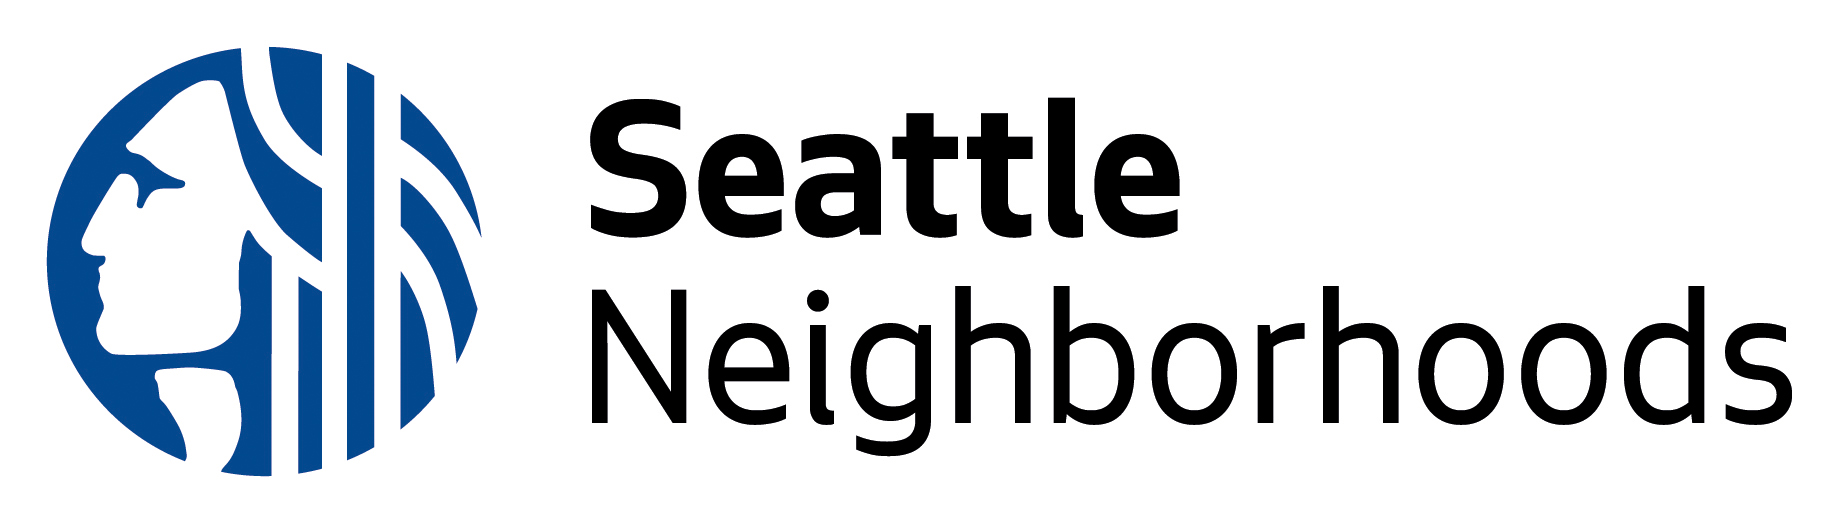 Dept of Neighborhoods Logo